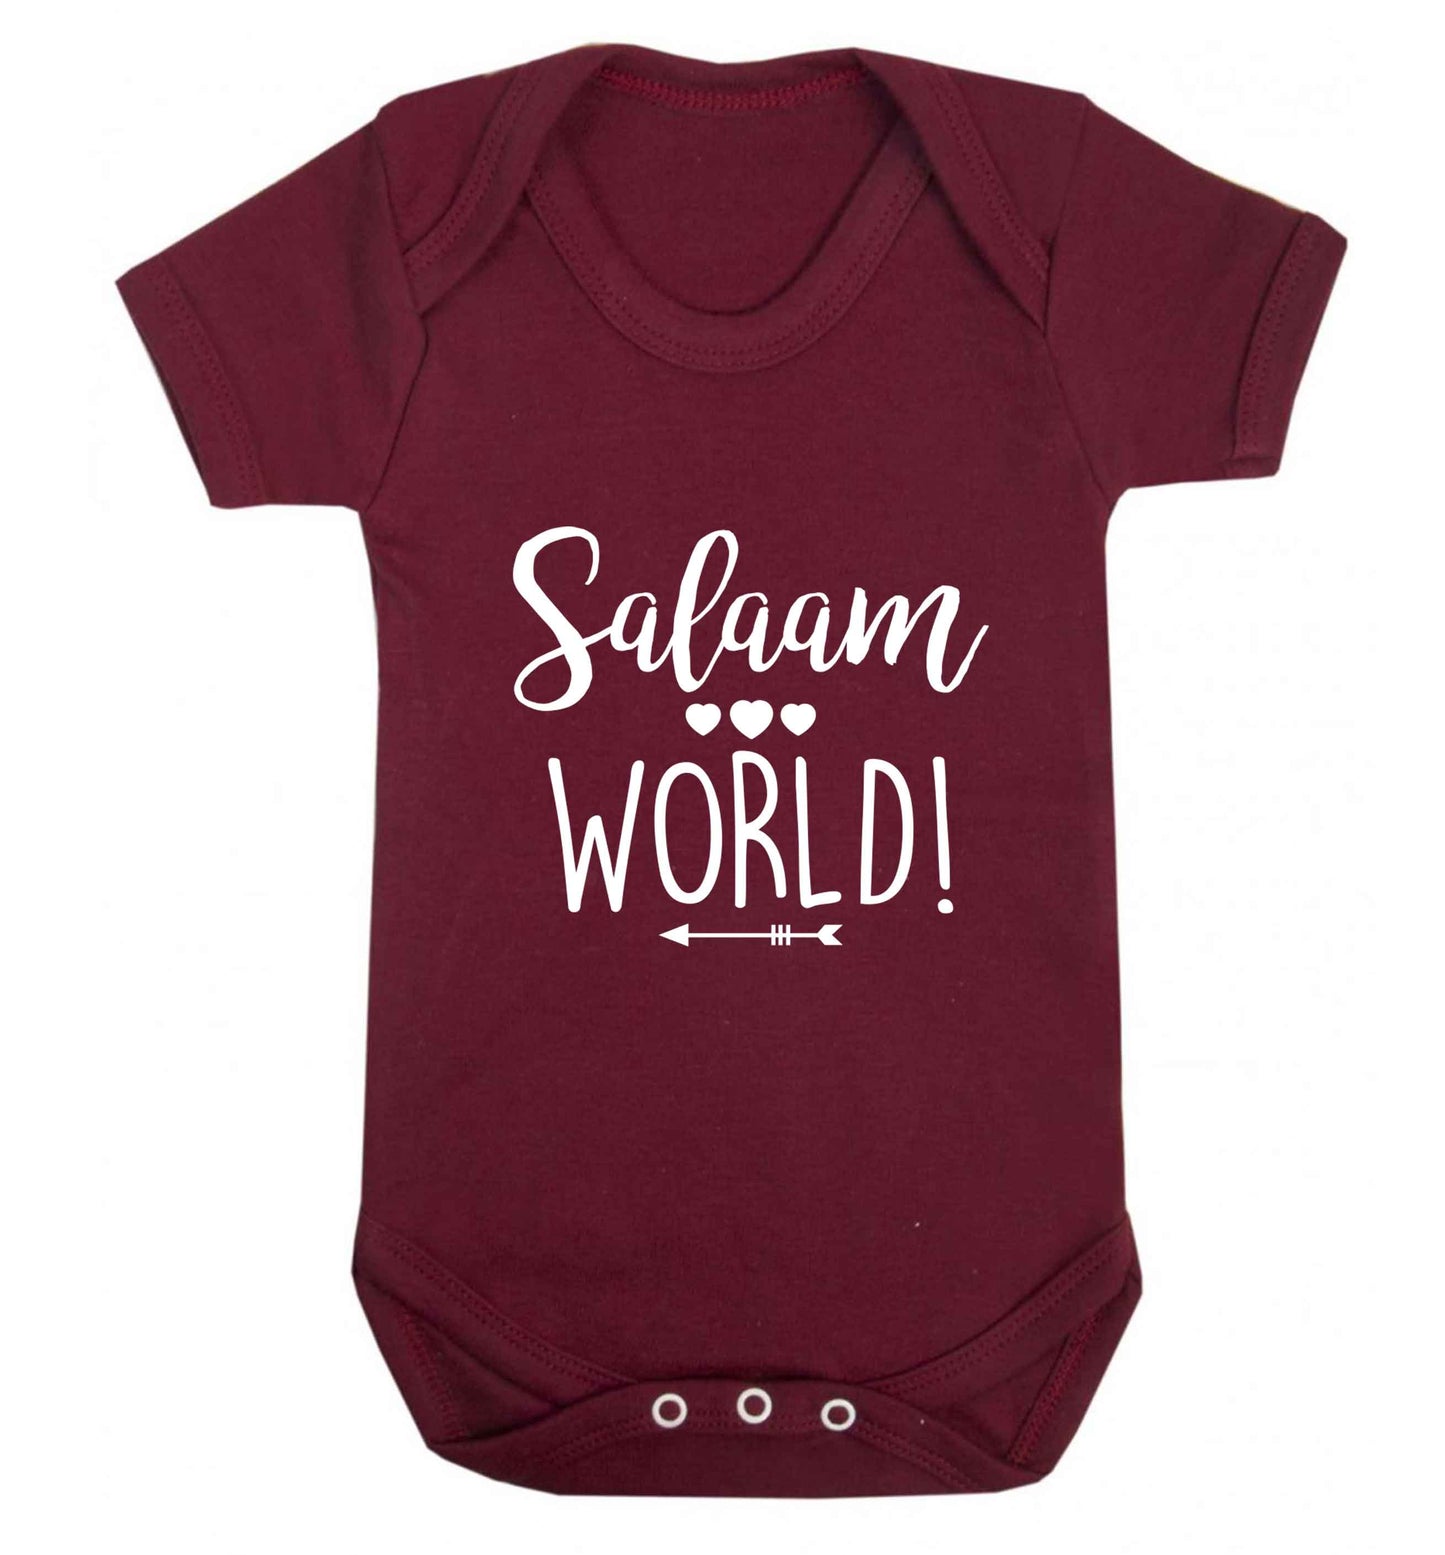 Salaam world baby vest maroon 18-24 months